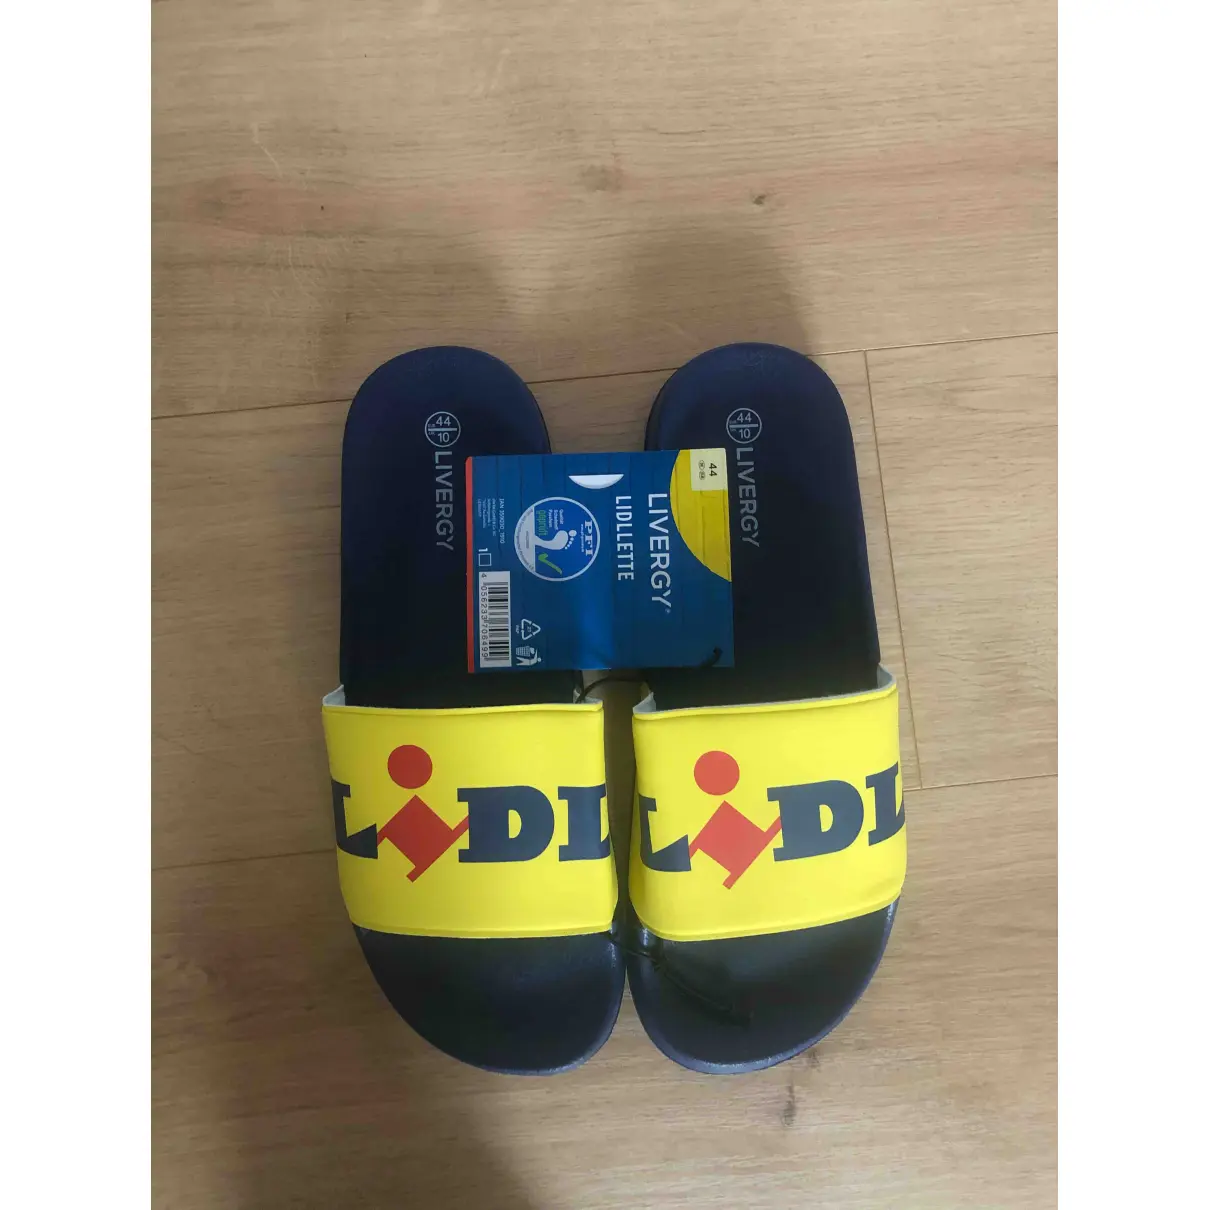 Buy Lidl Sandals online